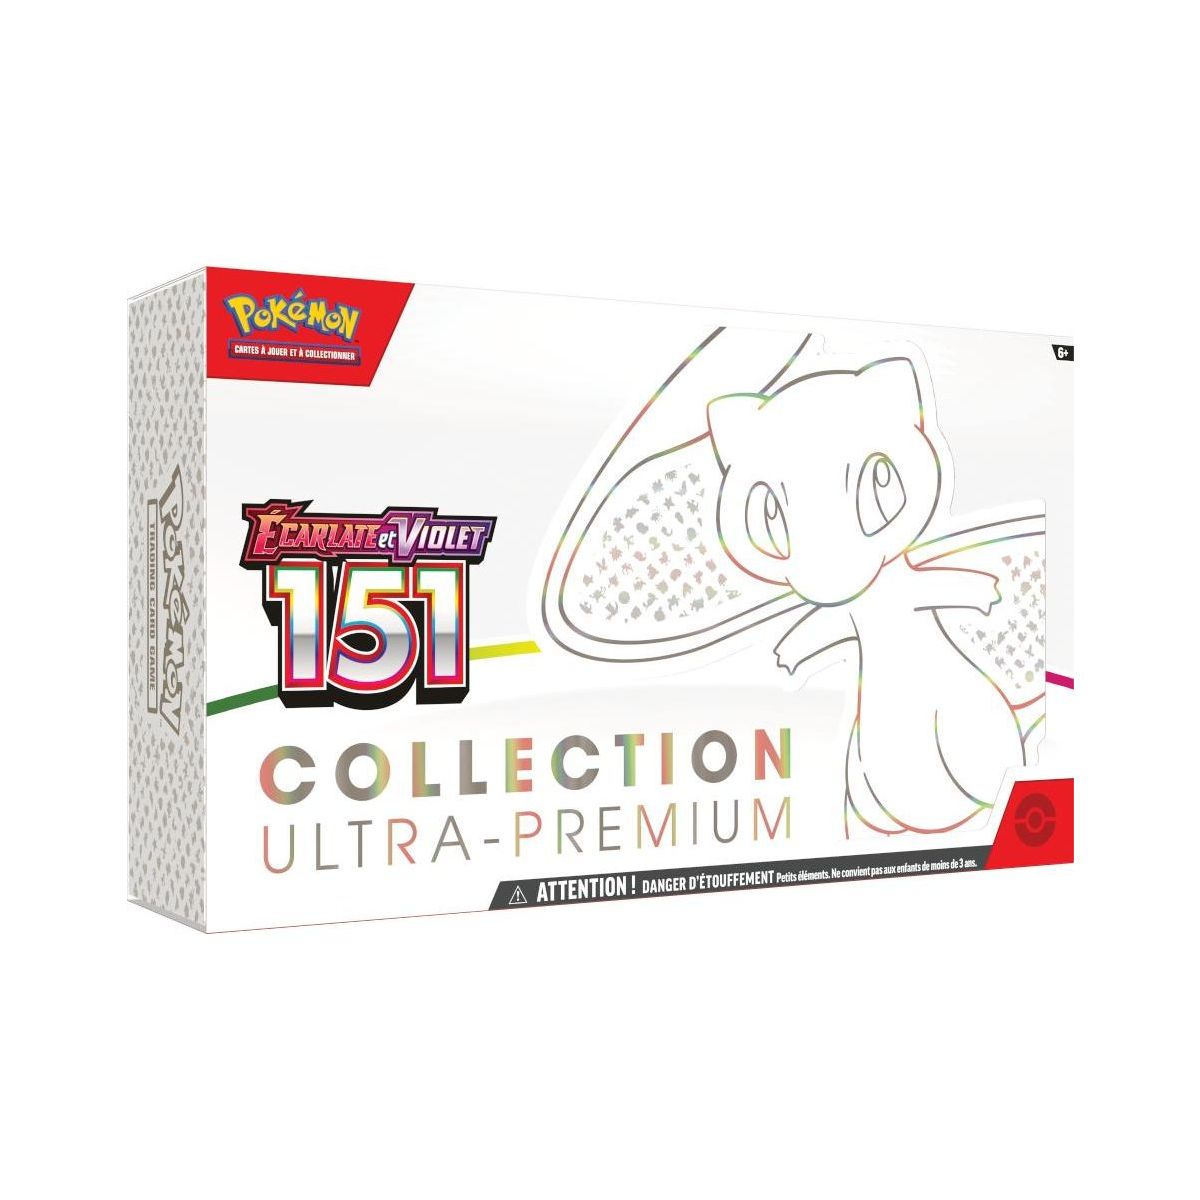 Pokémon - Coffret Collection Ultra Premium - Ecarlate et Violet - 151 -[SV03.5 - EV03.5] - FR